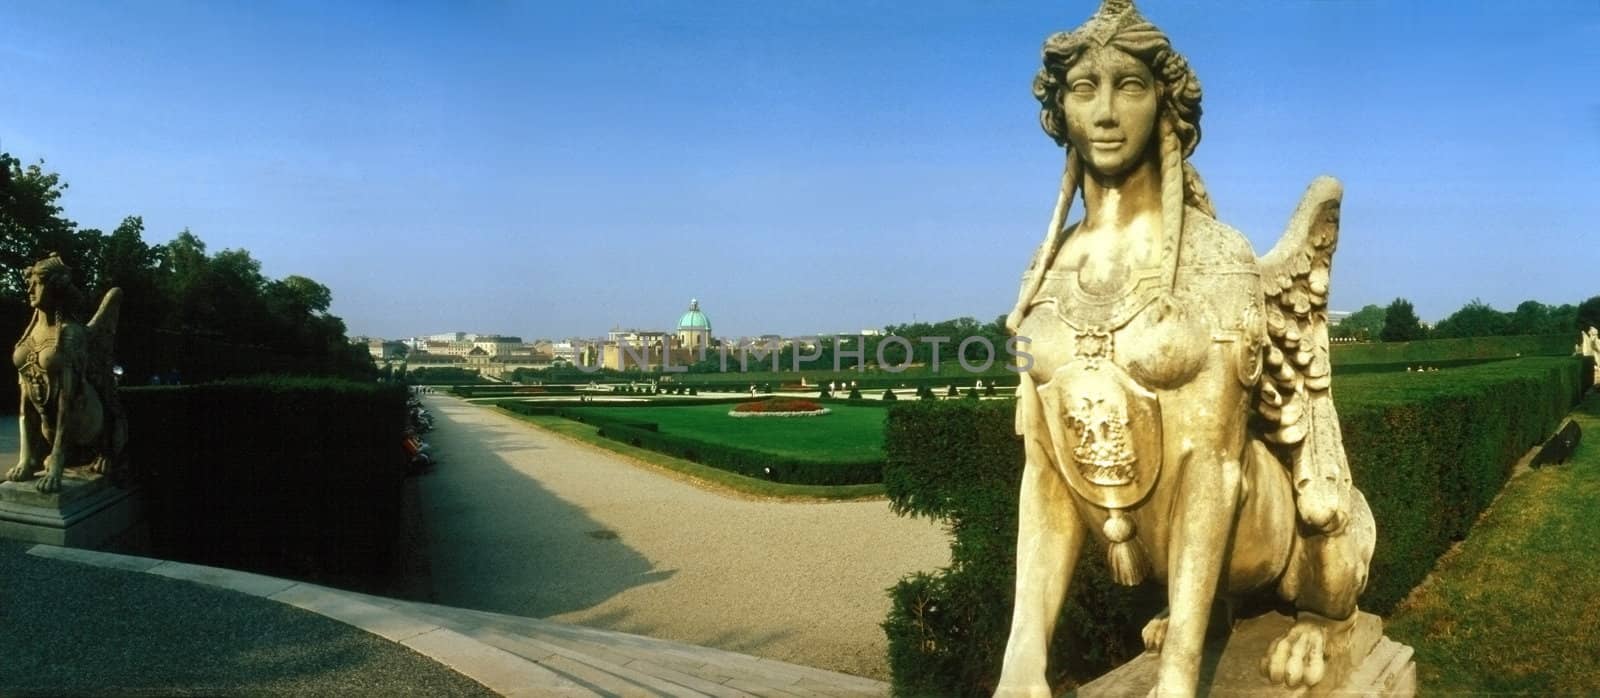 Palace Belvedere in Vienna